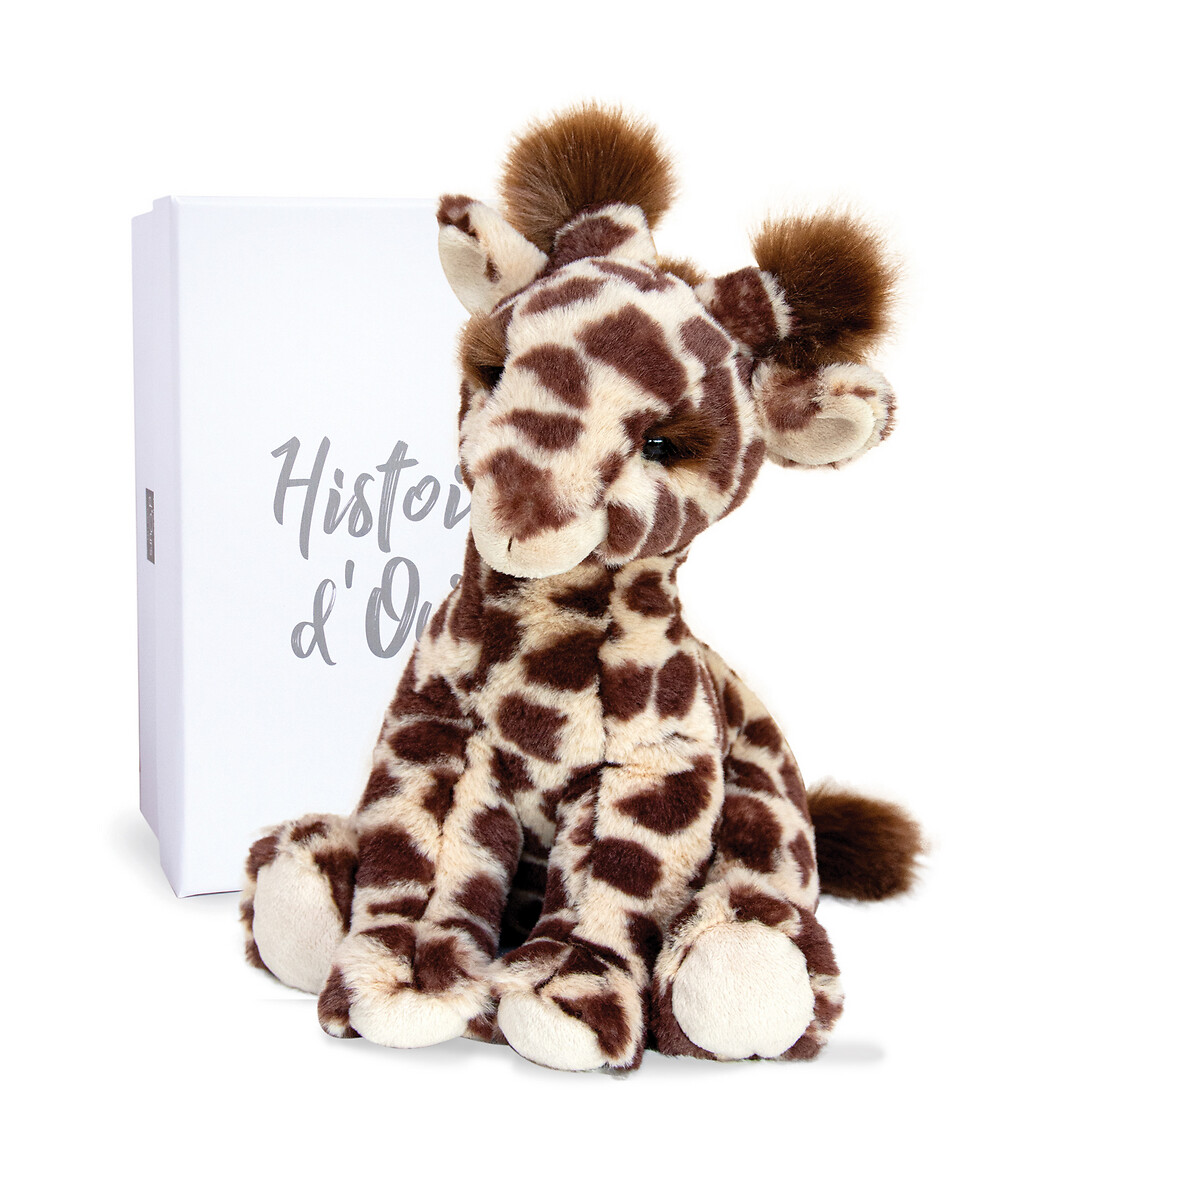 Lisi the Giraffe Cuddly Toy, 30 cm